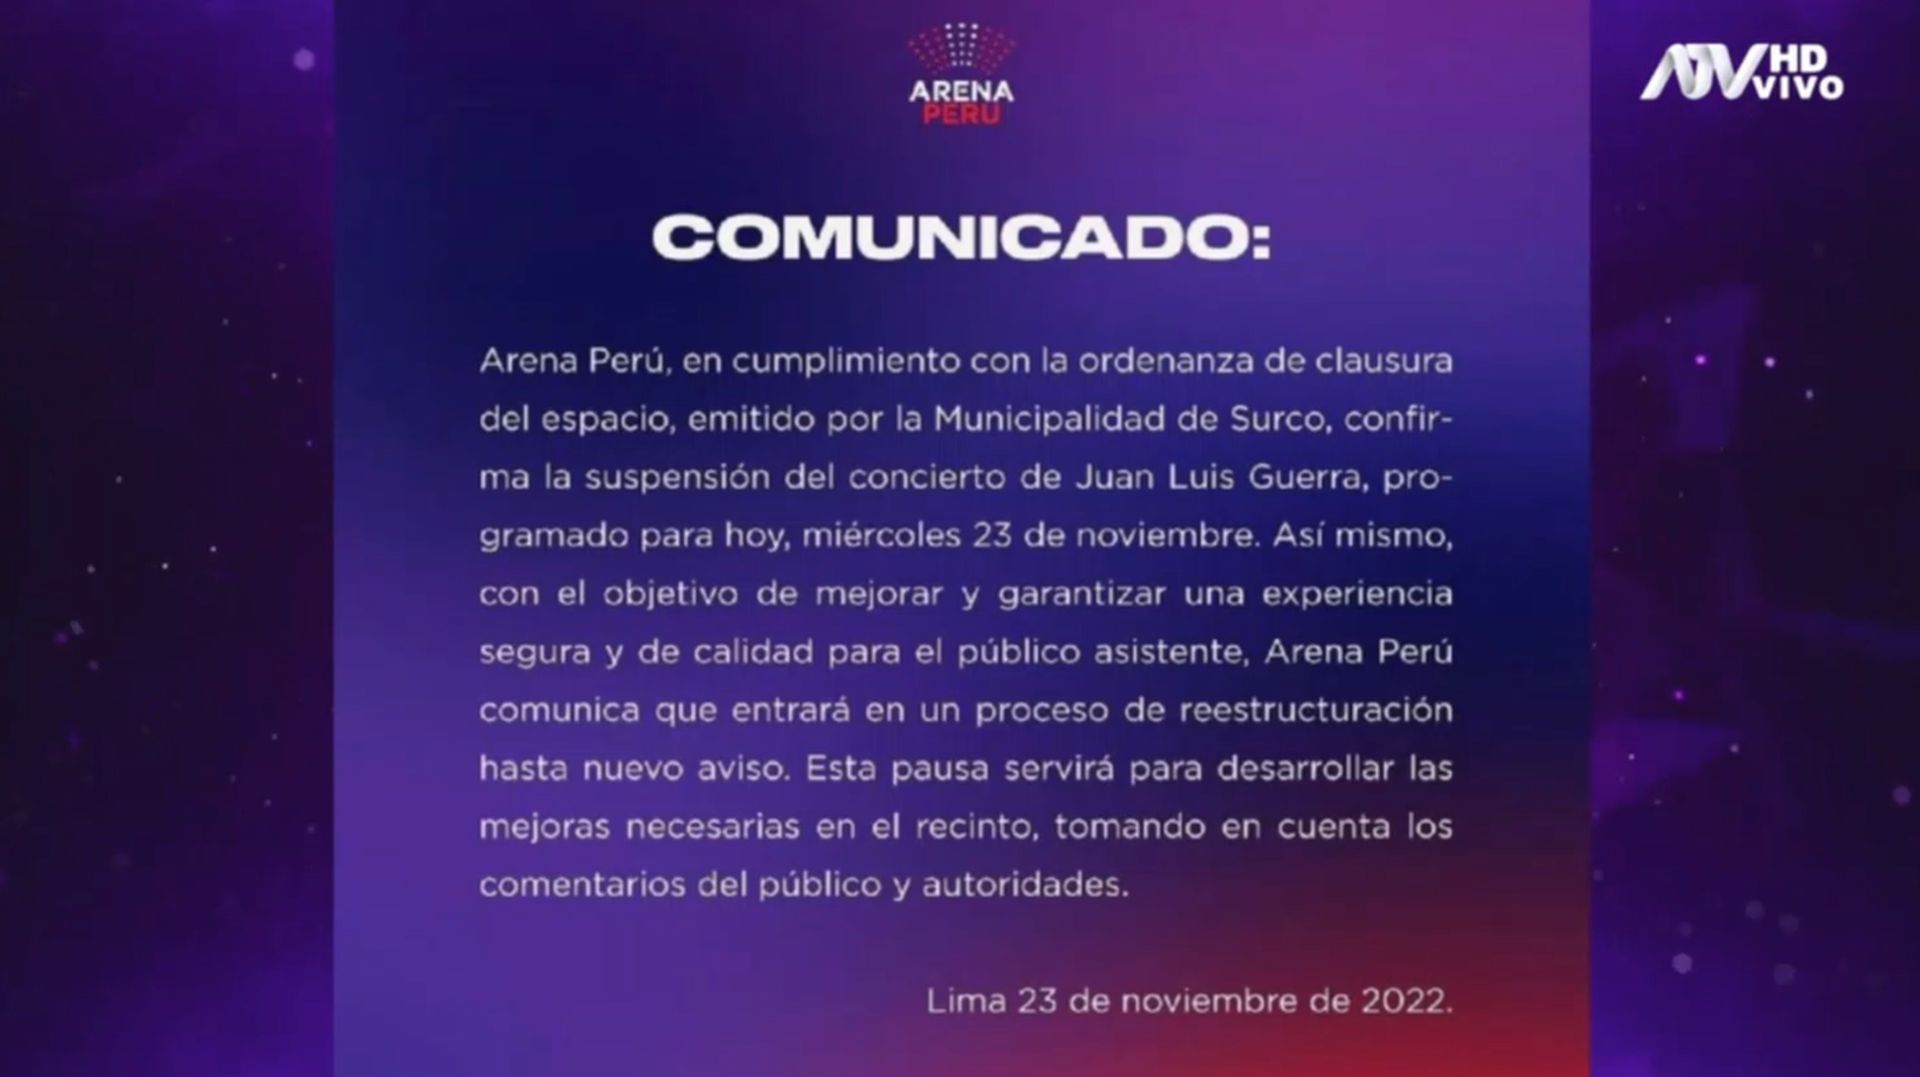 Comunicado del Arena Perú